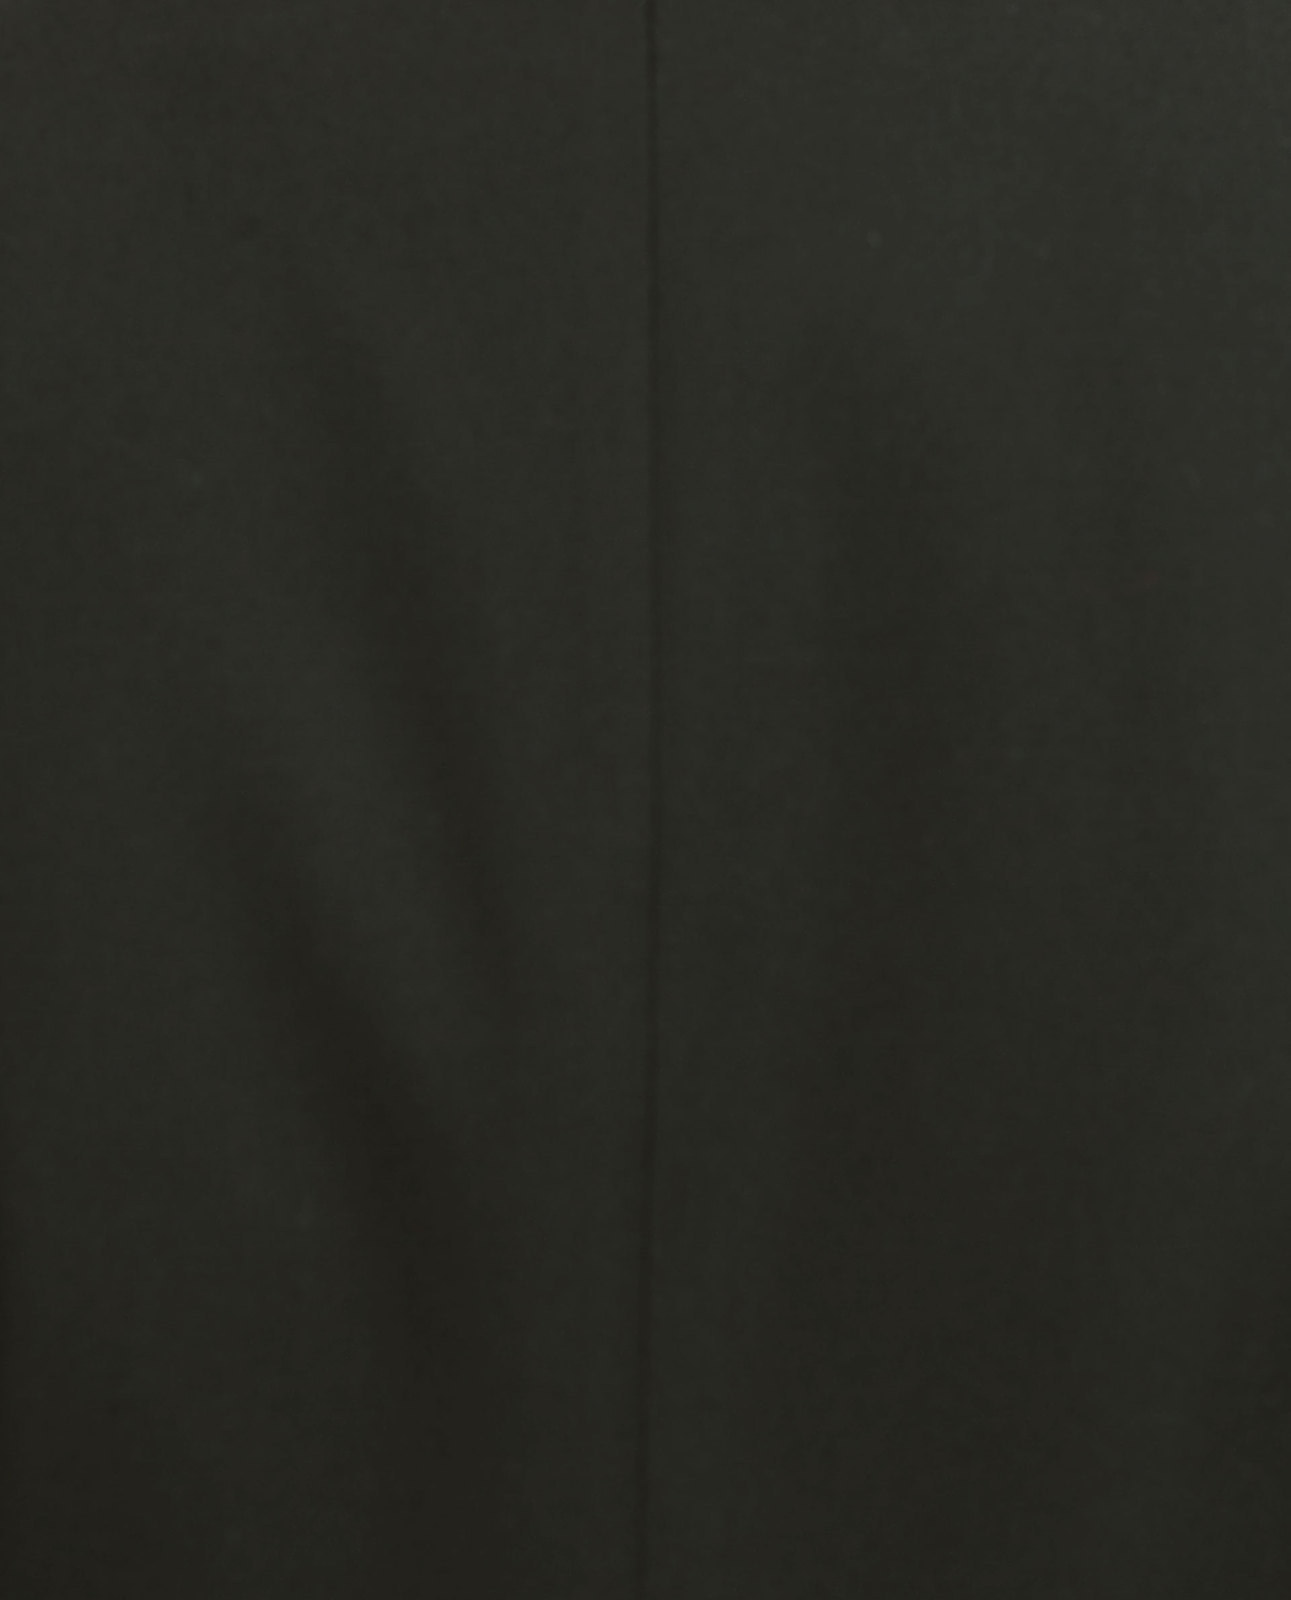 Zara egyenes szabású fekete blézer 2015.02.23 #74613 fotója